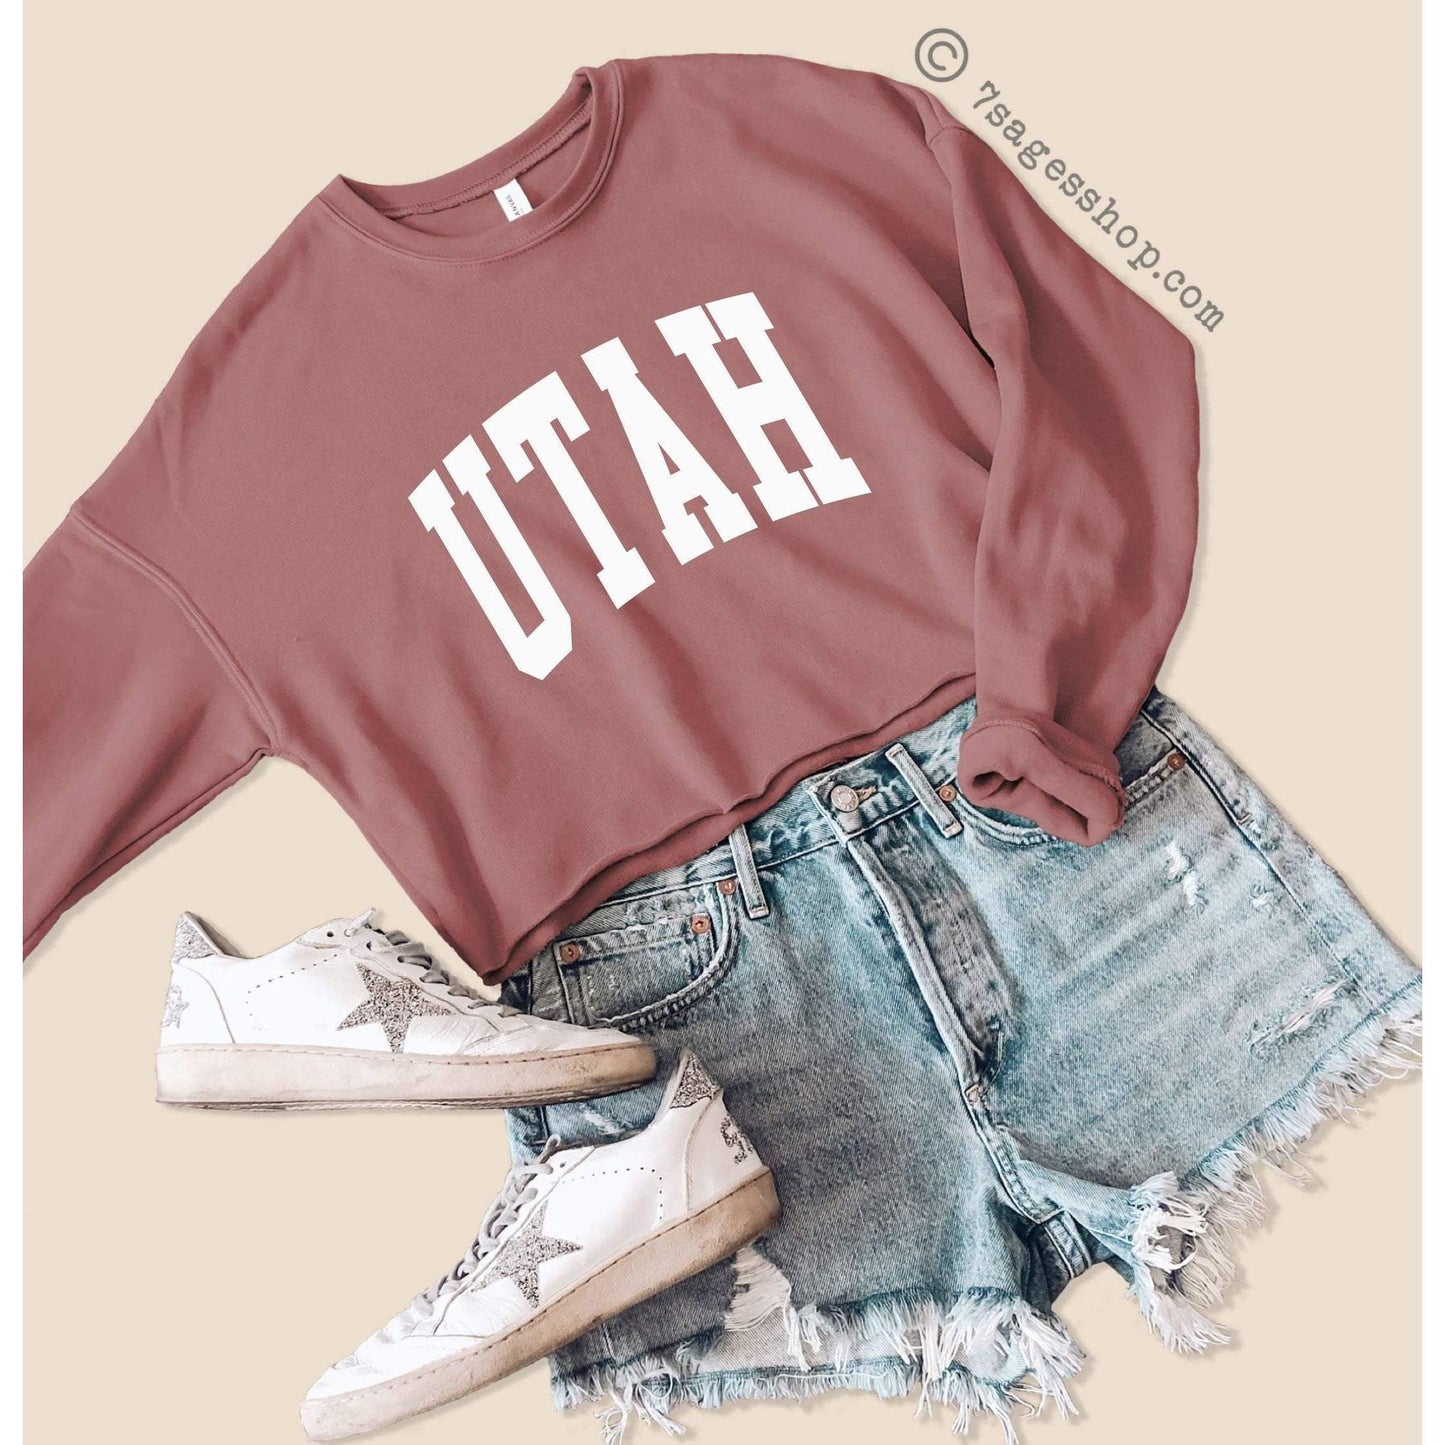 Utah Cropped Sweatshirt Utah Sweatshirt Utah Shirts University of Utah Crop Top Fleece Sweatshirt